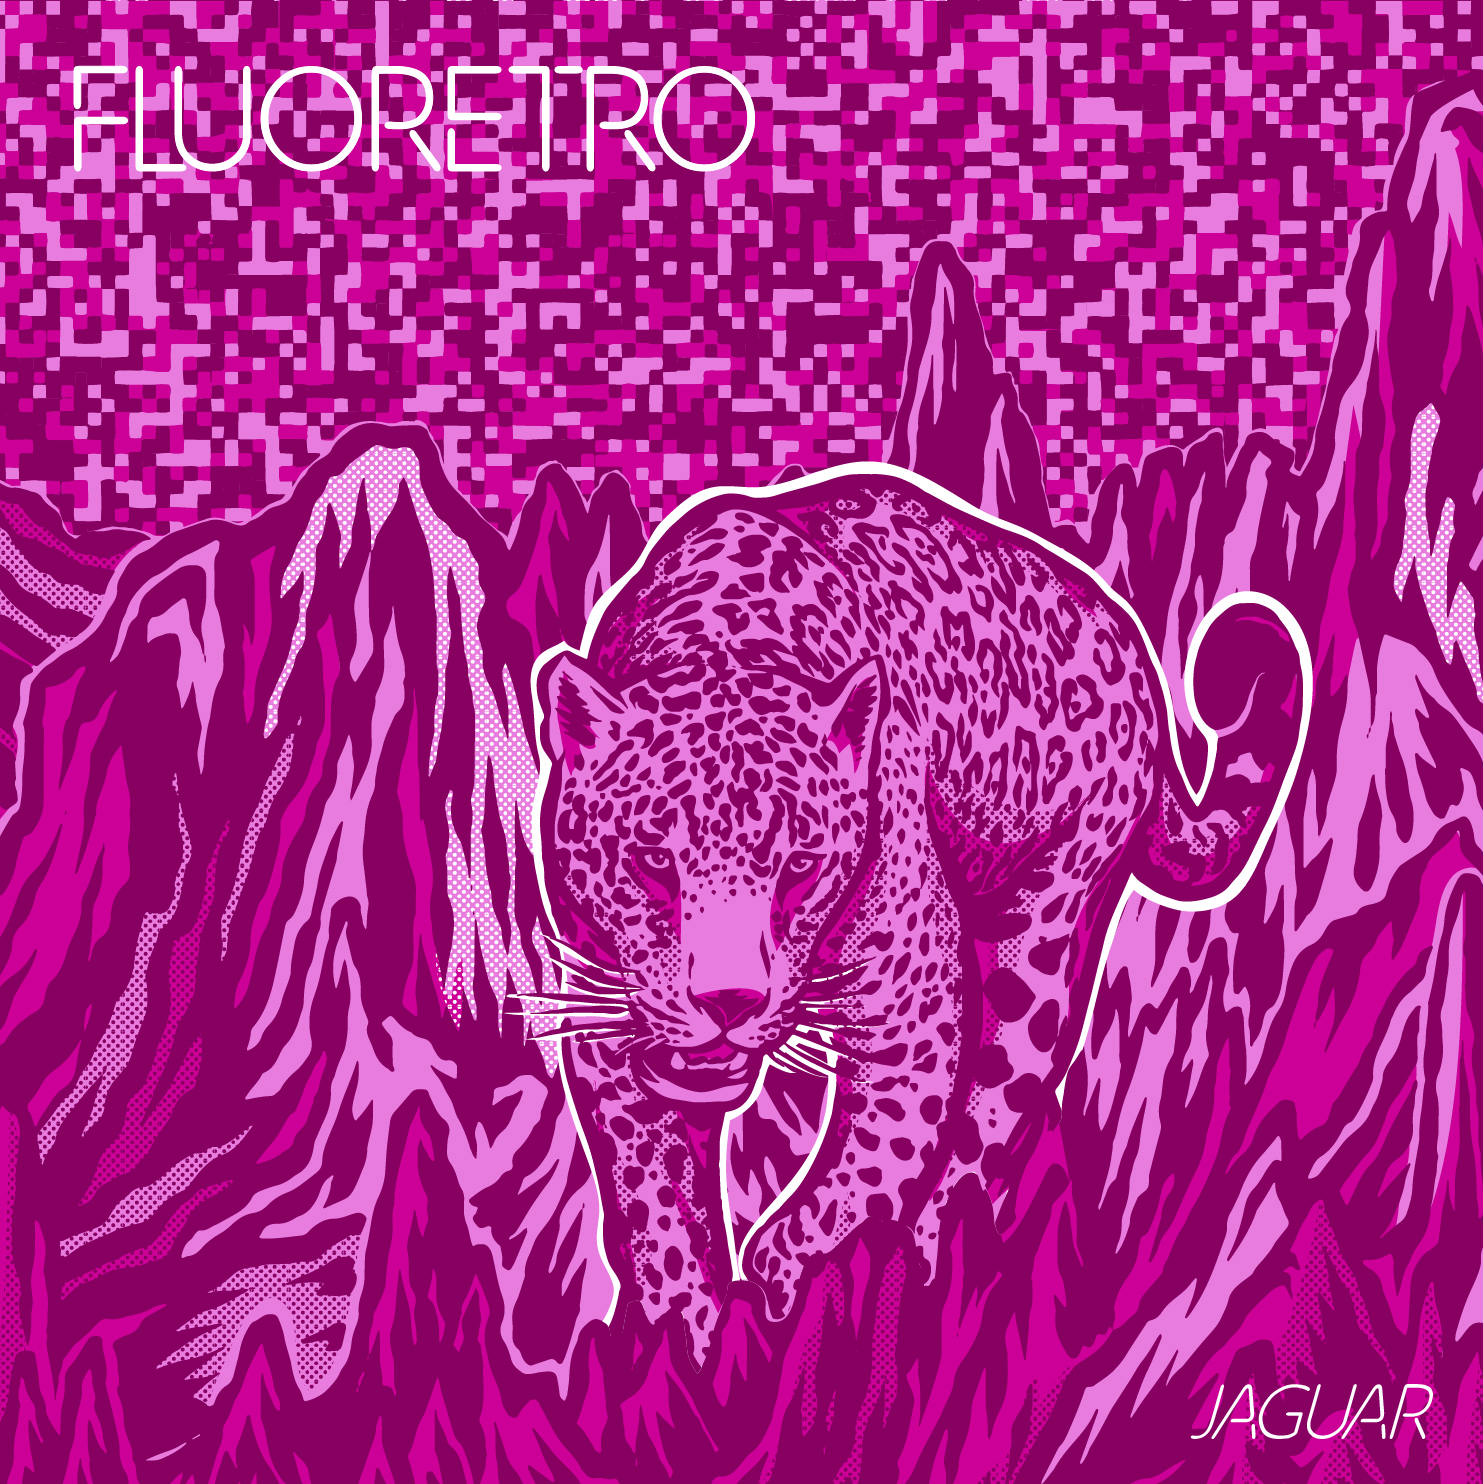 Jaguar par Fluoretro